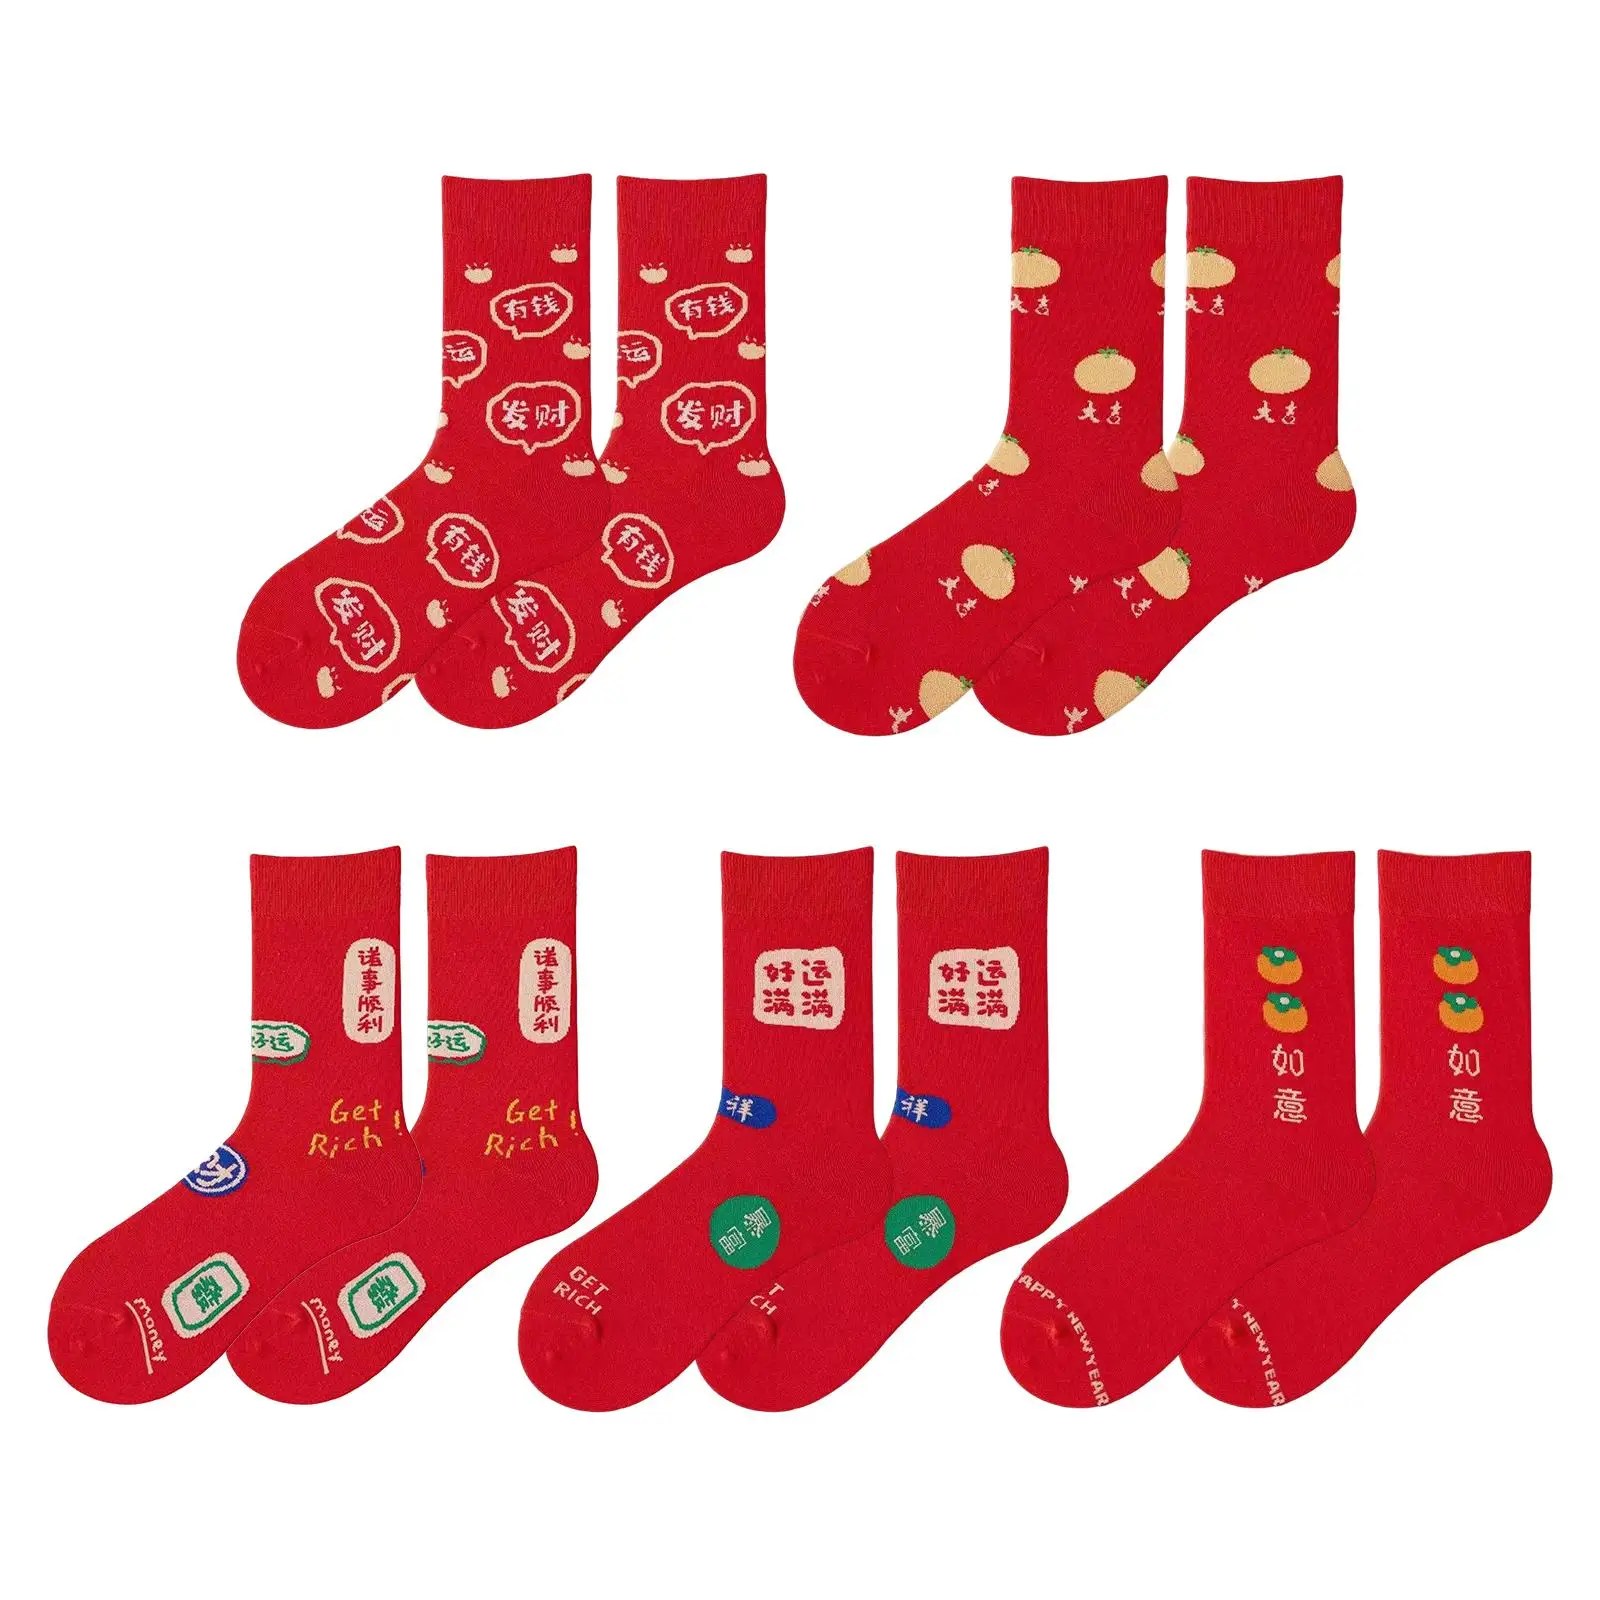 5 Pairs Red Socks, Winter Soft Breathable Stockings Ankle Socks Festival Socks for Girls